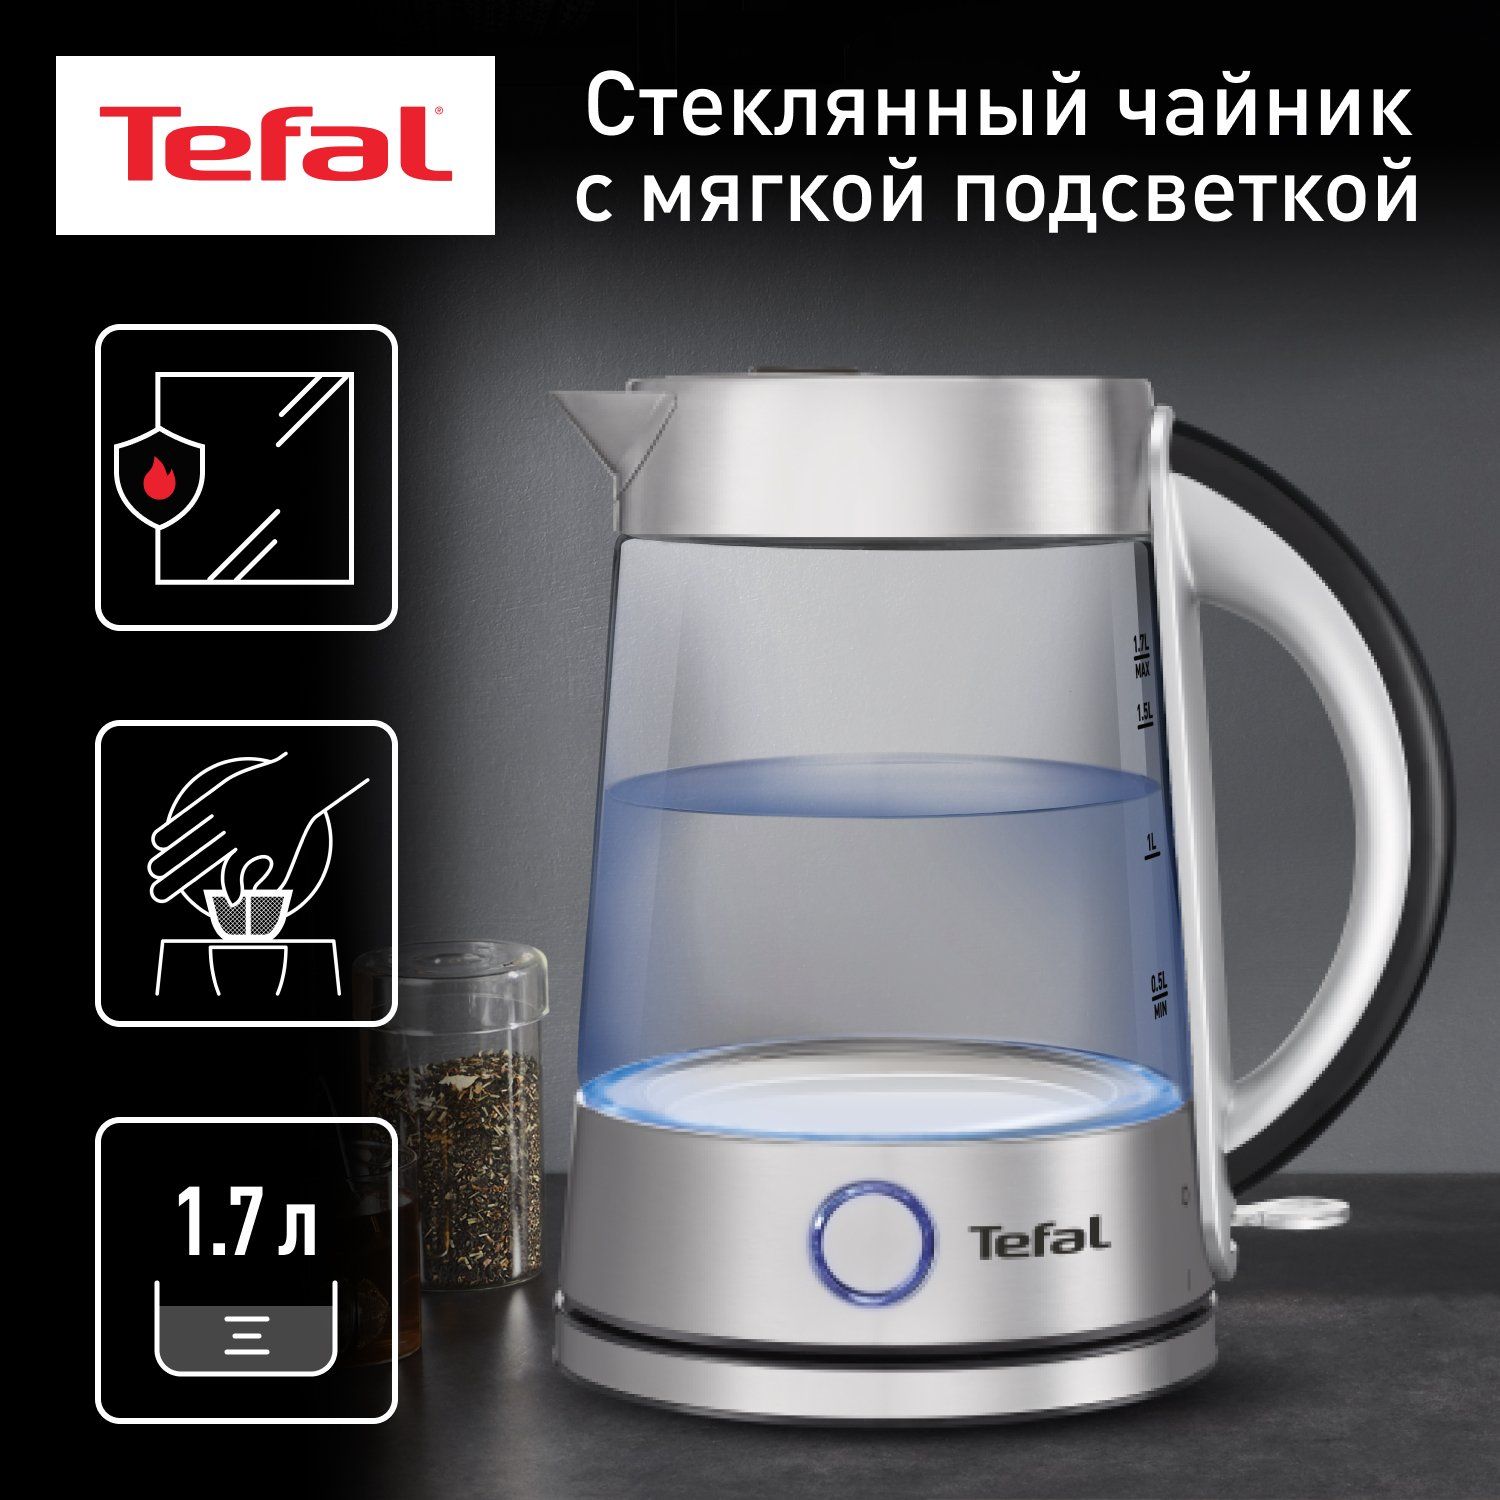 Чайник электрический Tefal Glass Kettle KI760D30, 1.7 л, серебристый/черный чайник электрический tefal glass kettle ki750d30 1 7 л серебристый